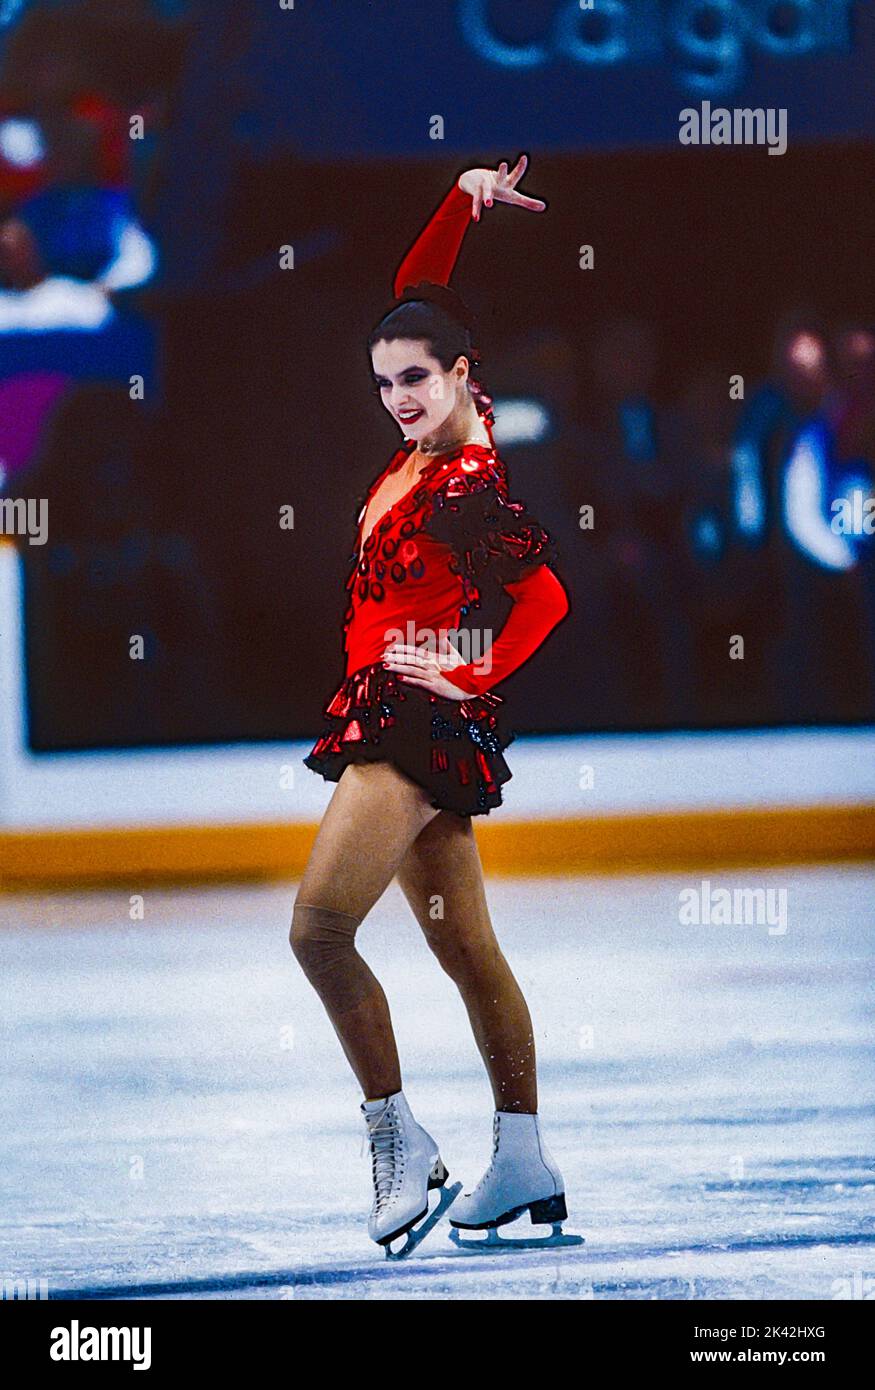 Katarina Witt (GDR) médaillée d'or et championne olympique en compétition sur le skate gratuit de patinage artistique féminin aux Jeux olympiques d'hiver de 1988. Banque D'Images